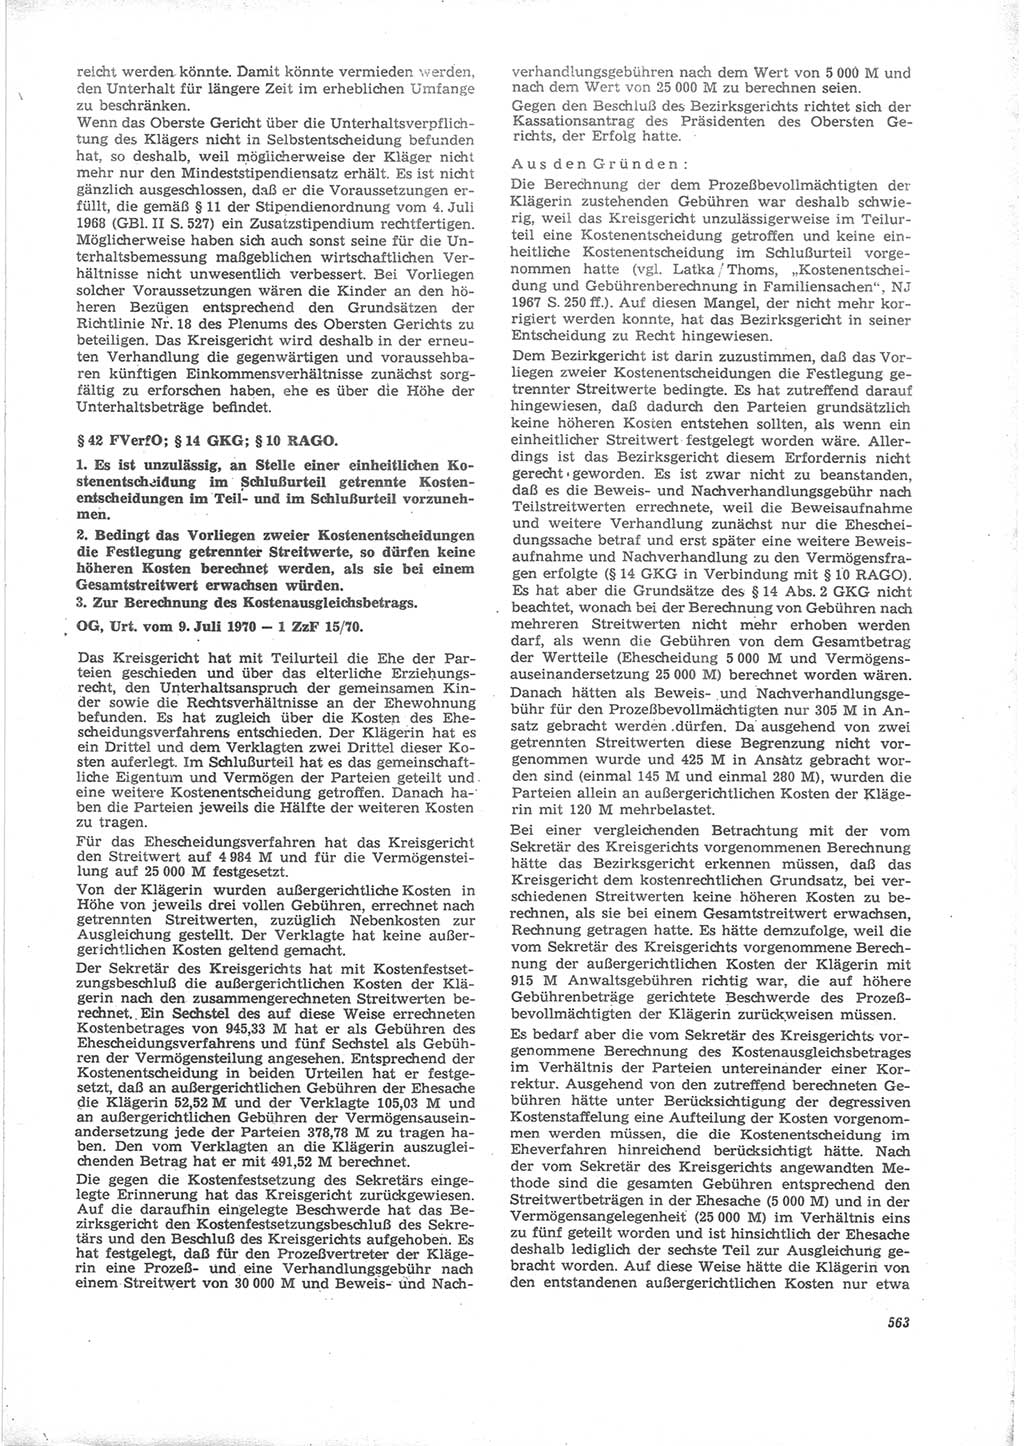 Neue Justiz (NJ), Zeitschrift für Recht und Rechtswissenschaft [Deutsche Demokratische Republik (DDR)], 24. Jahrgang 1970, Seite 563 (NJ DDR 1970, S. 563)